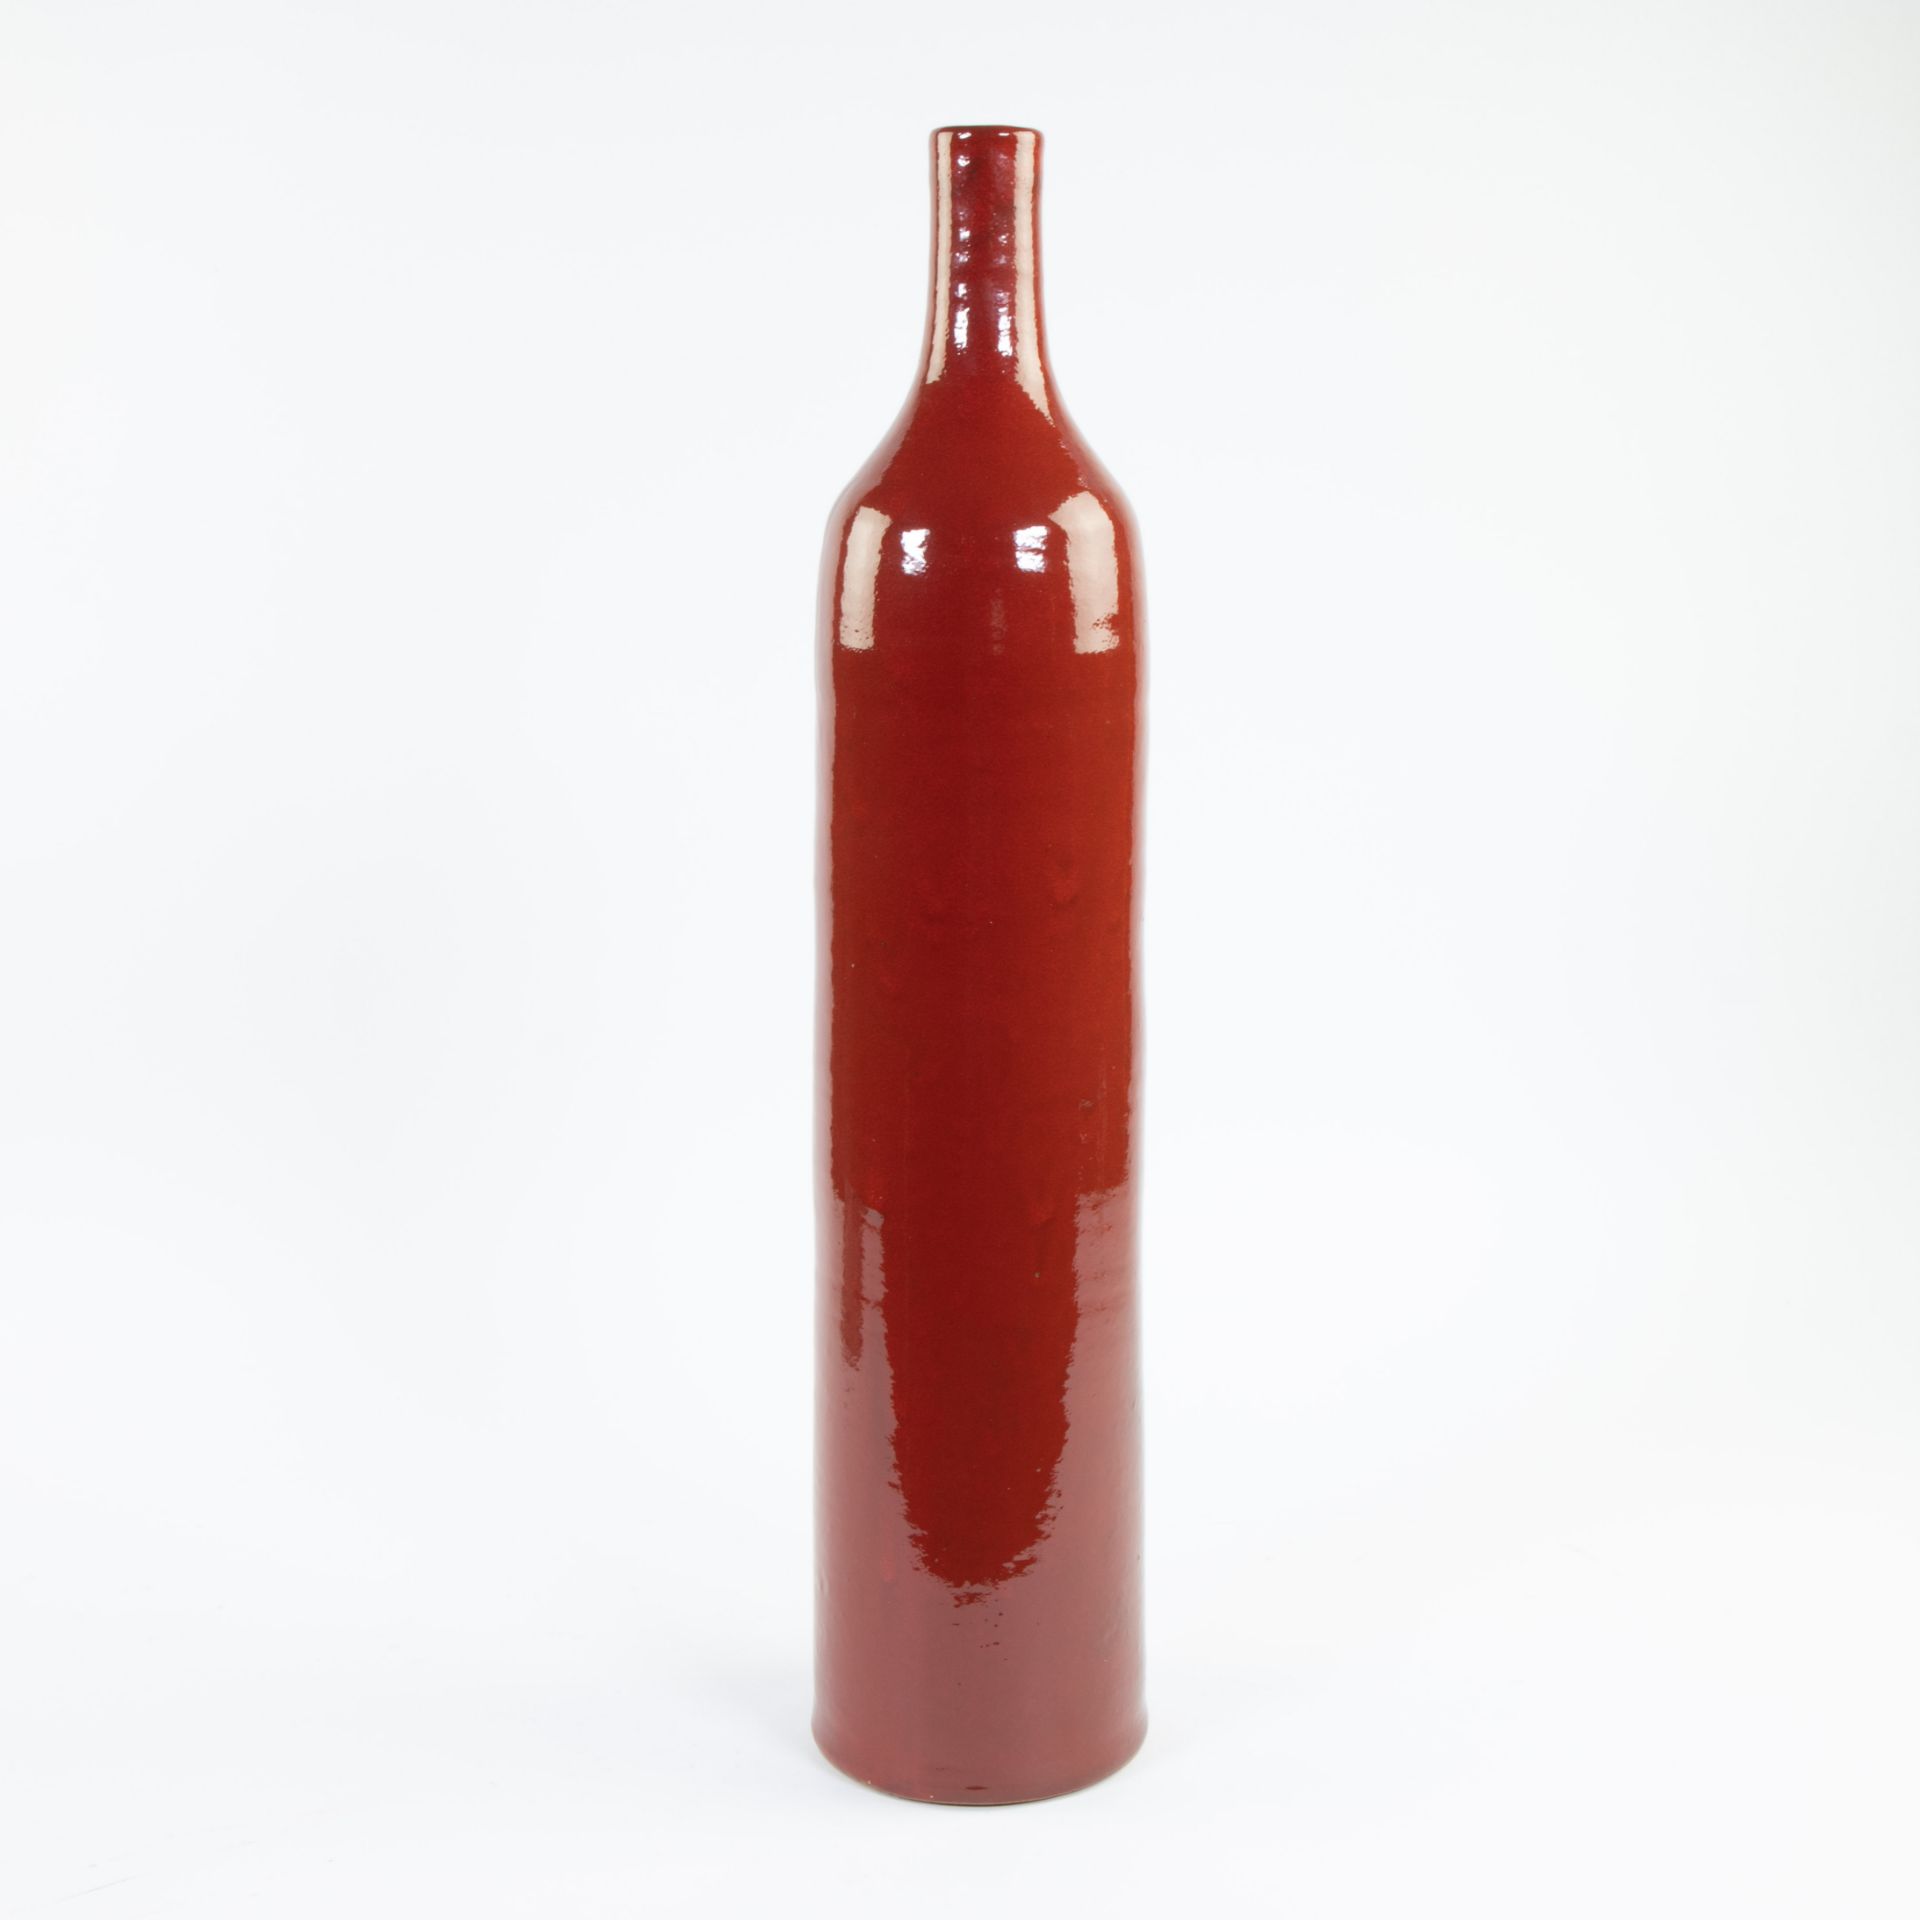 Tall tightly stylised red glazed ceramic vase